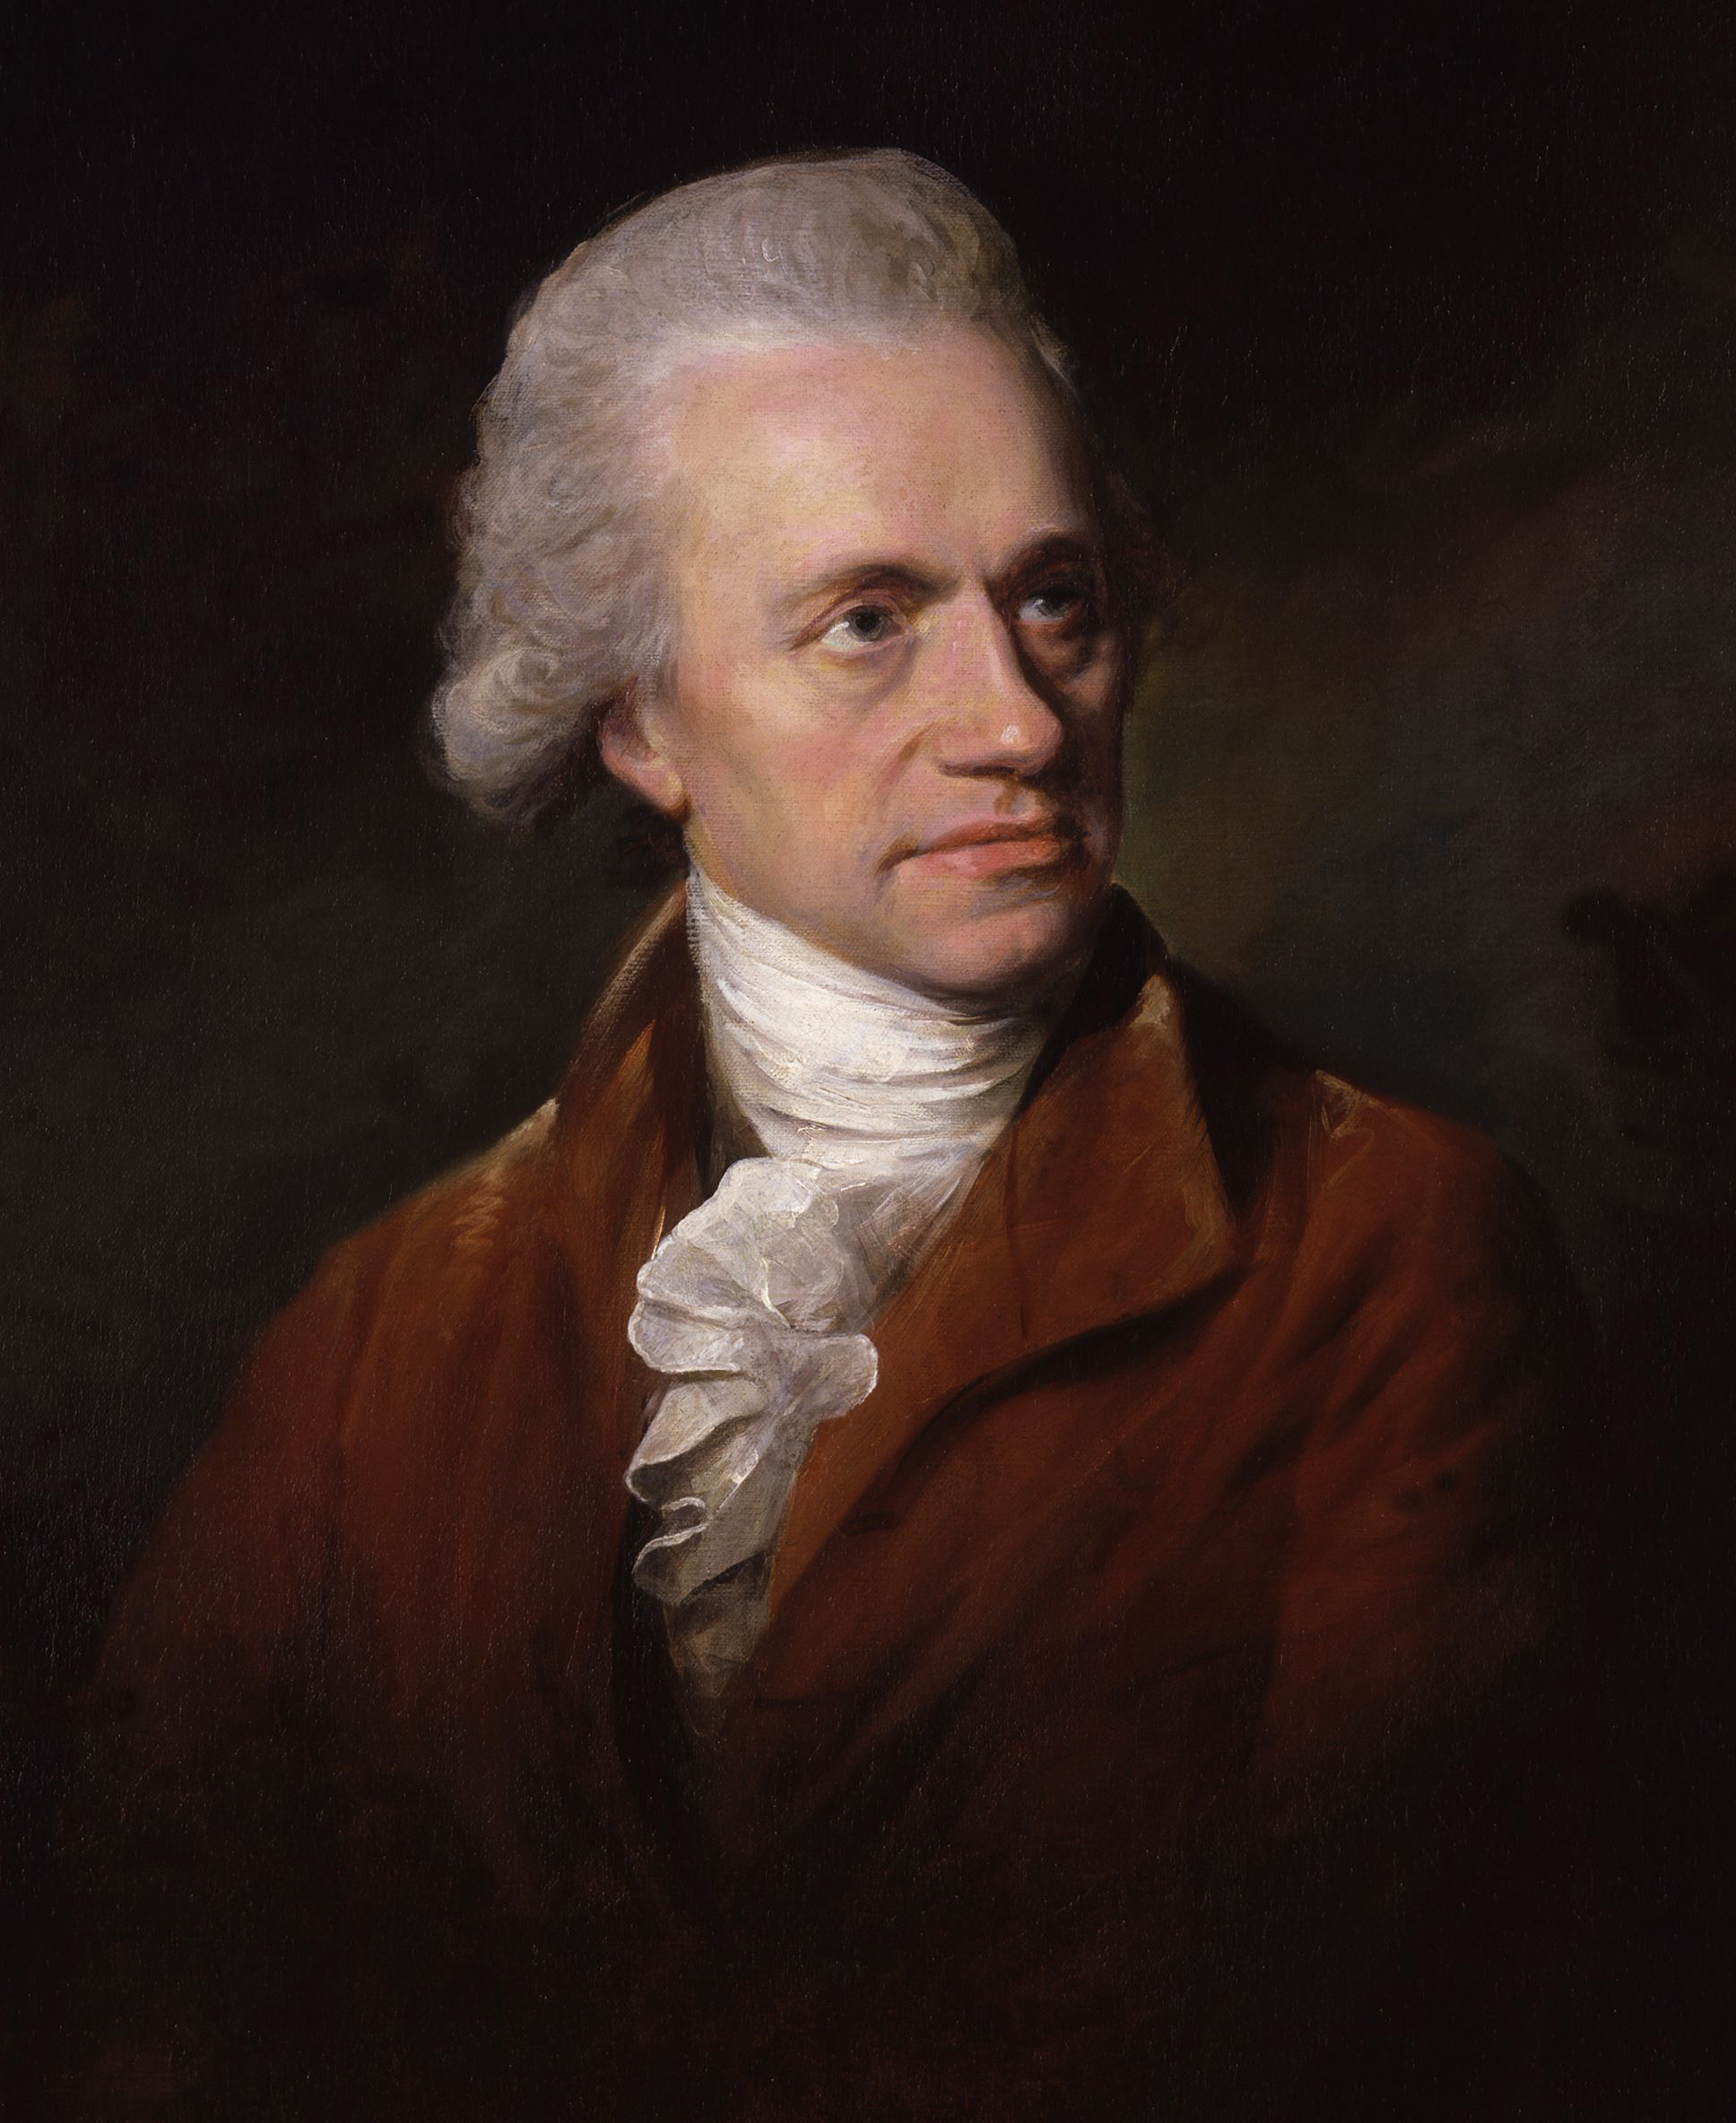 Morto 200 anni fa – Friedrich Wilhelm Herschel: musica militare, doppie stelle, Urano e infrarossi